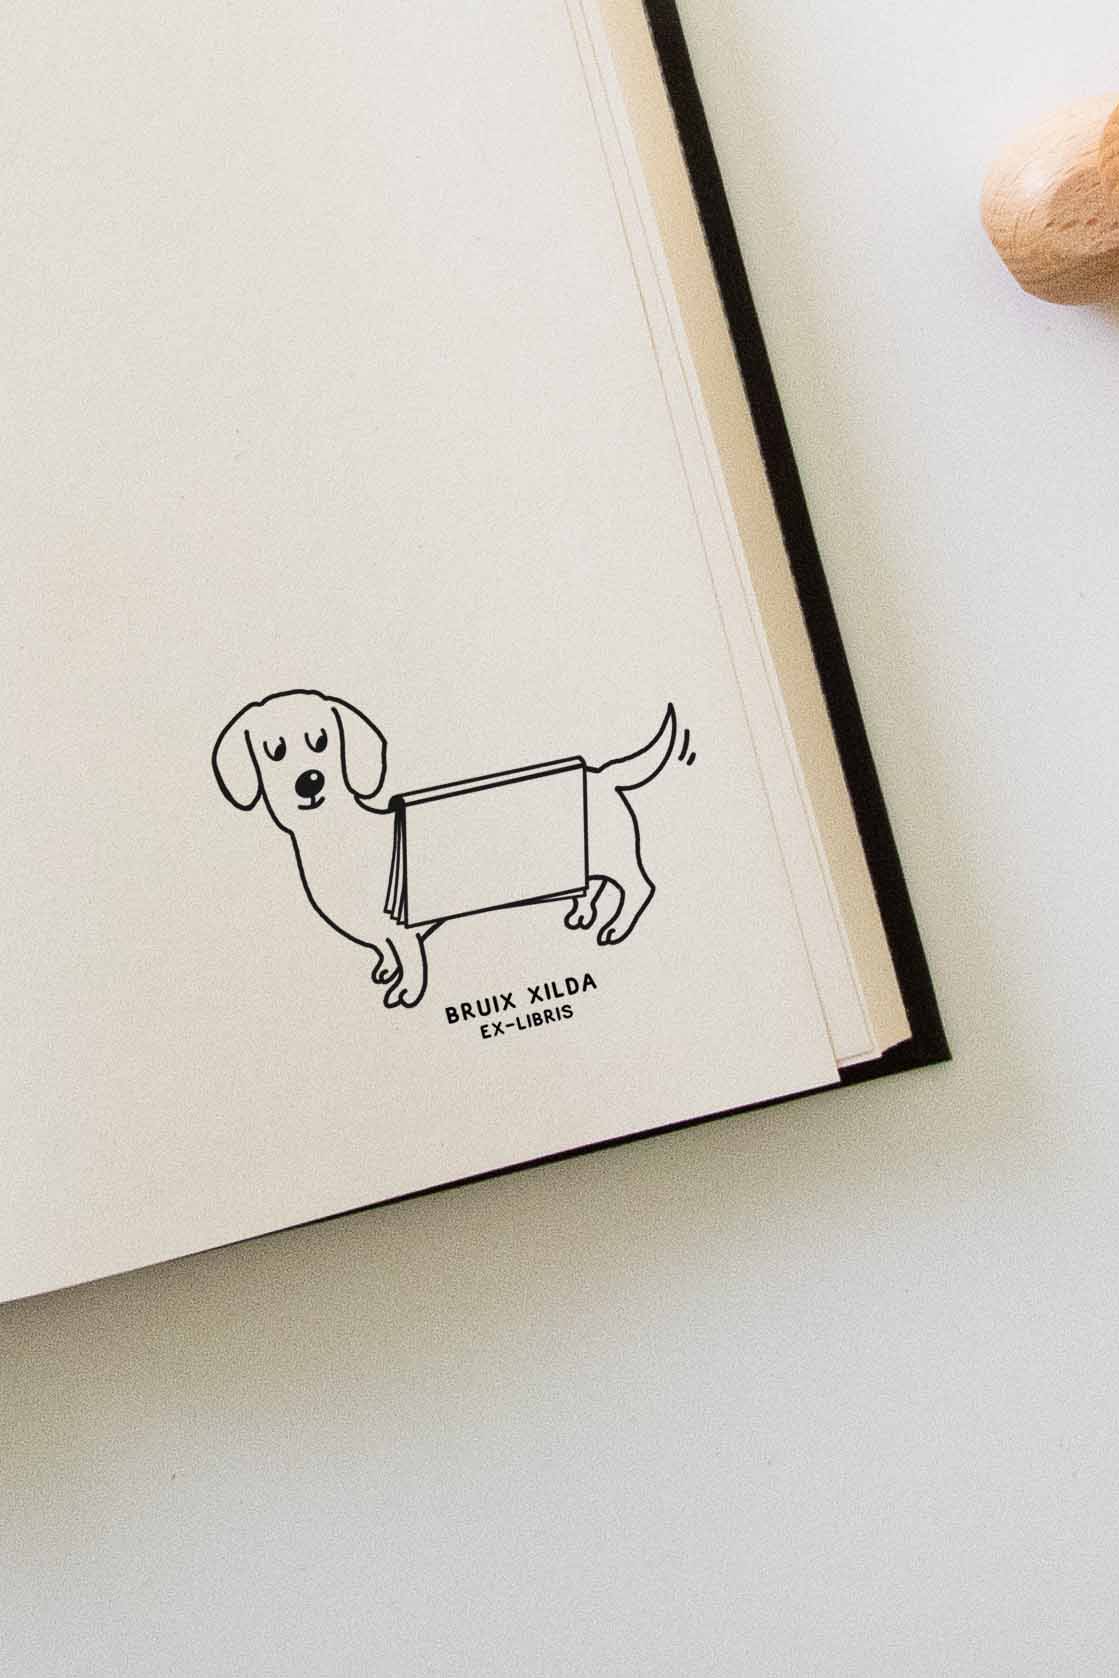 Portadilla de libro estampado con sello exlibris de un perro con un libro abierto sobre el lomo